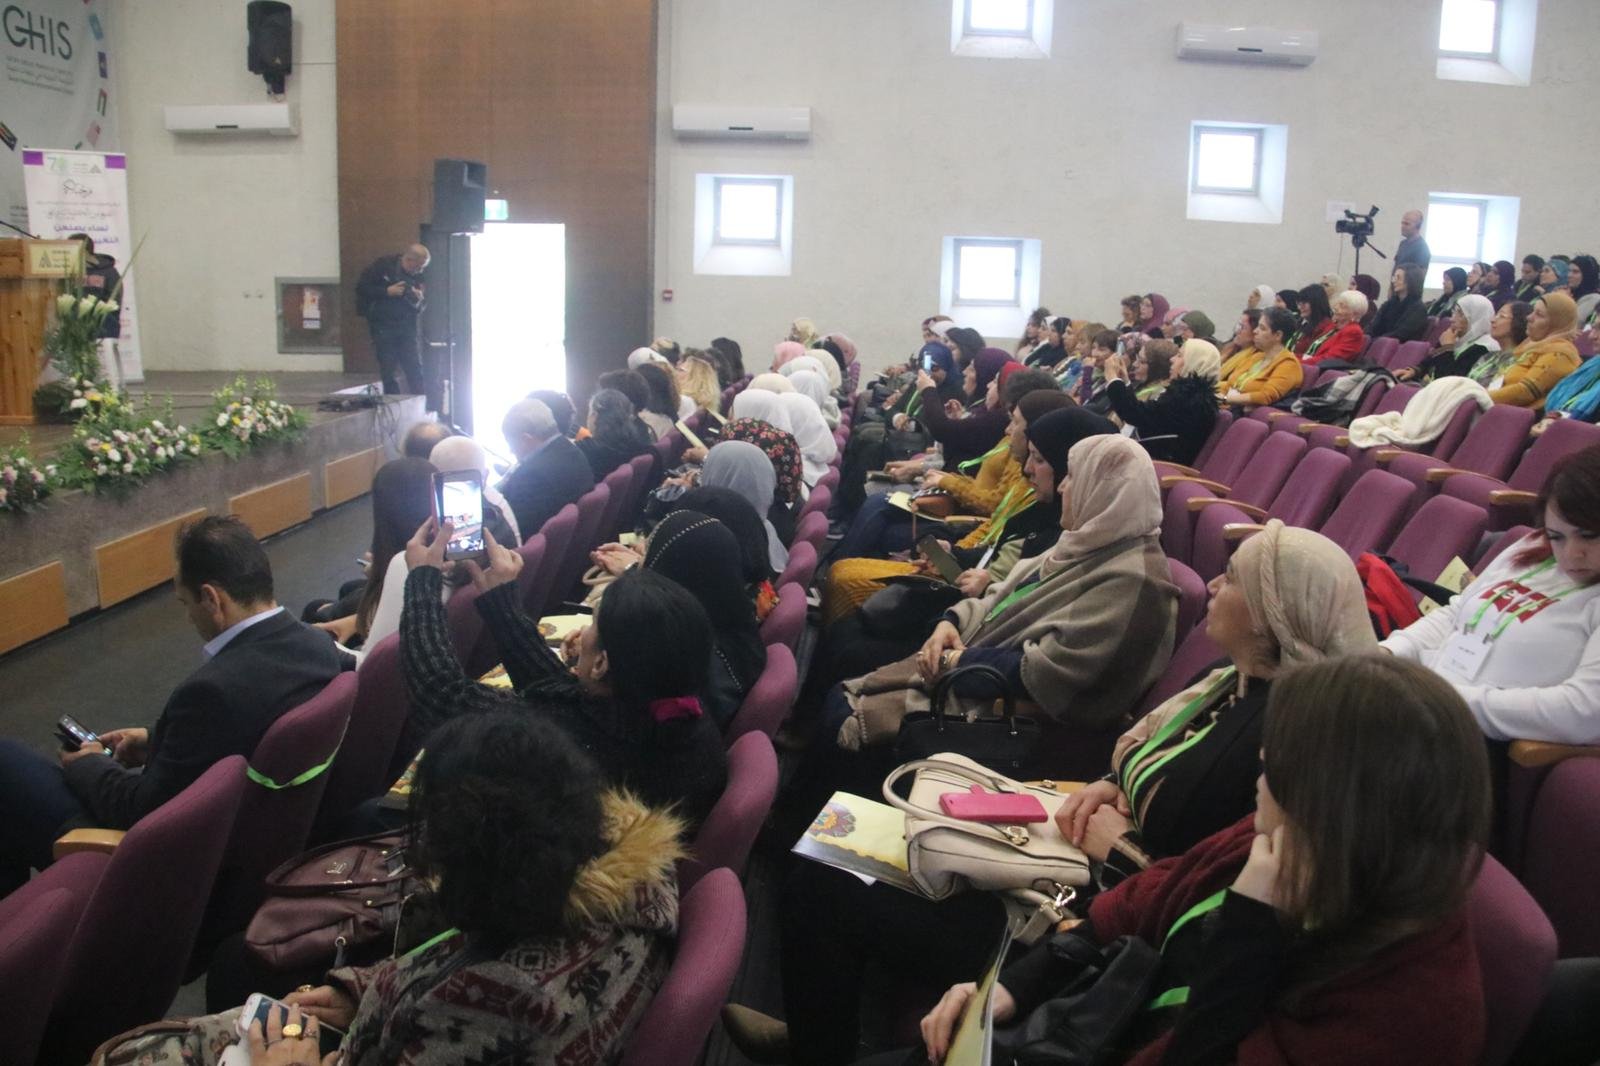 حضور واسع في مؤتمر "نساء يصنعن التغيير" في جفعات حبيبة -1